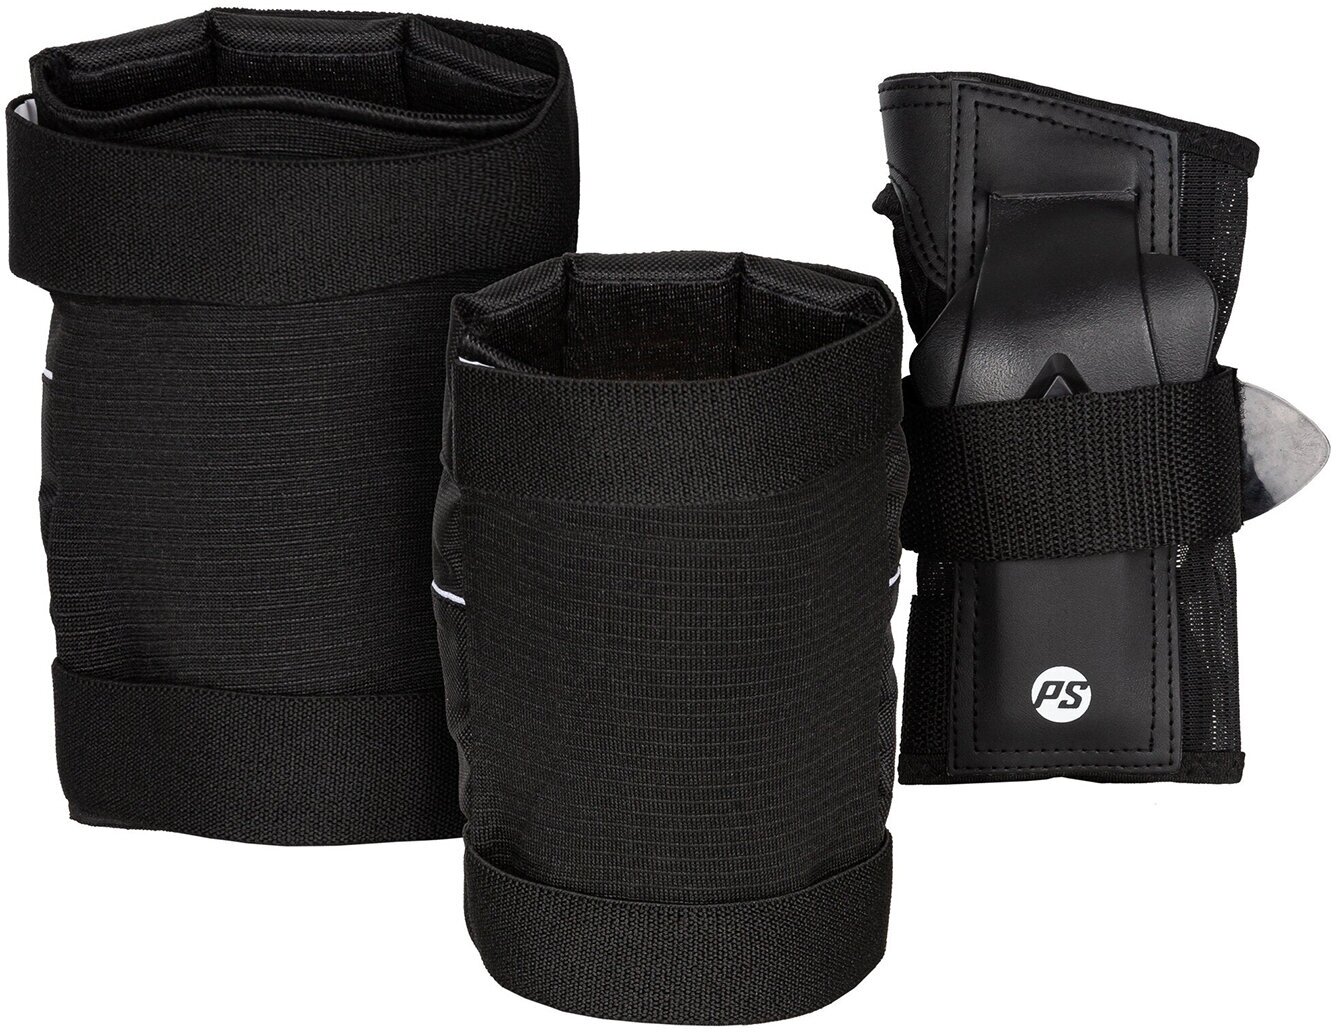 Комплект защиты для роликов Powerslide Standard Set Black (US: S)